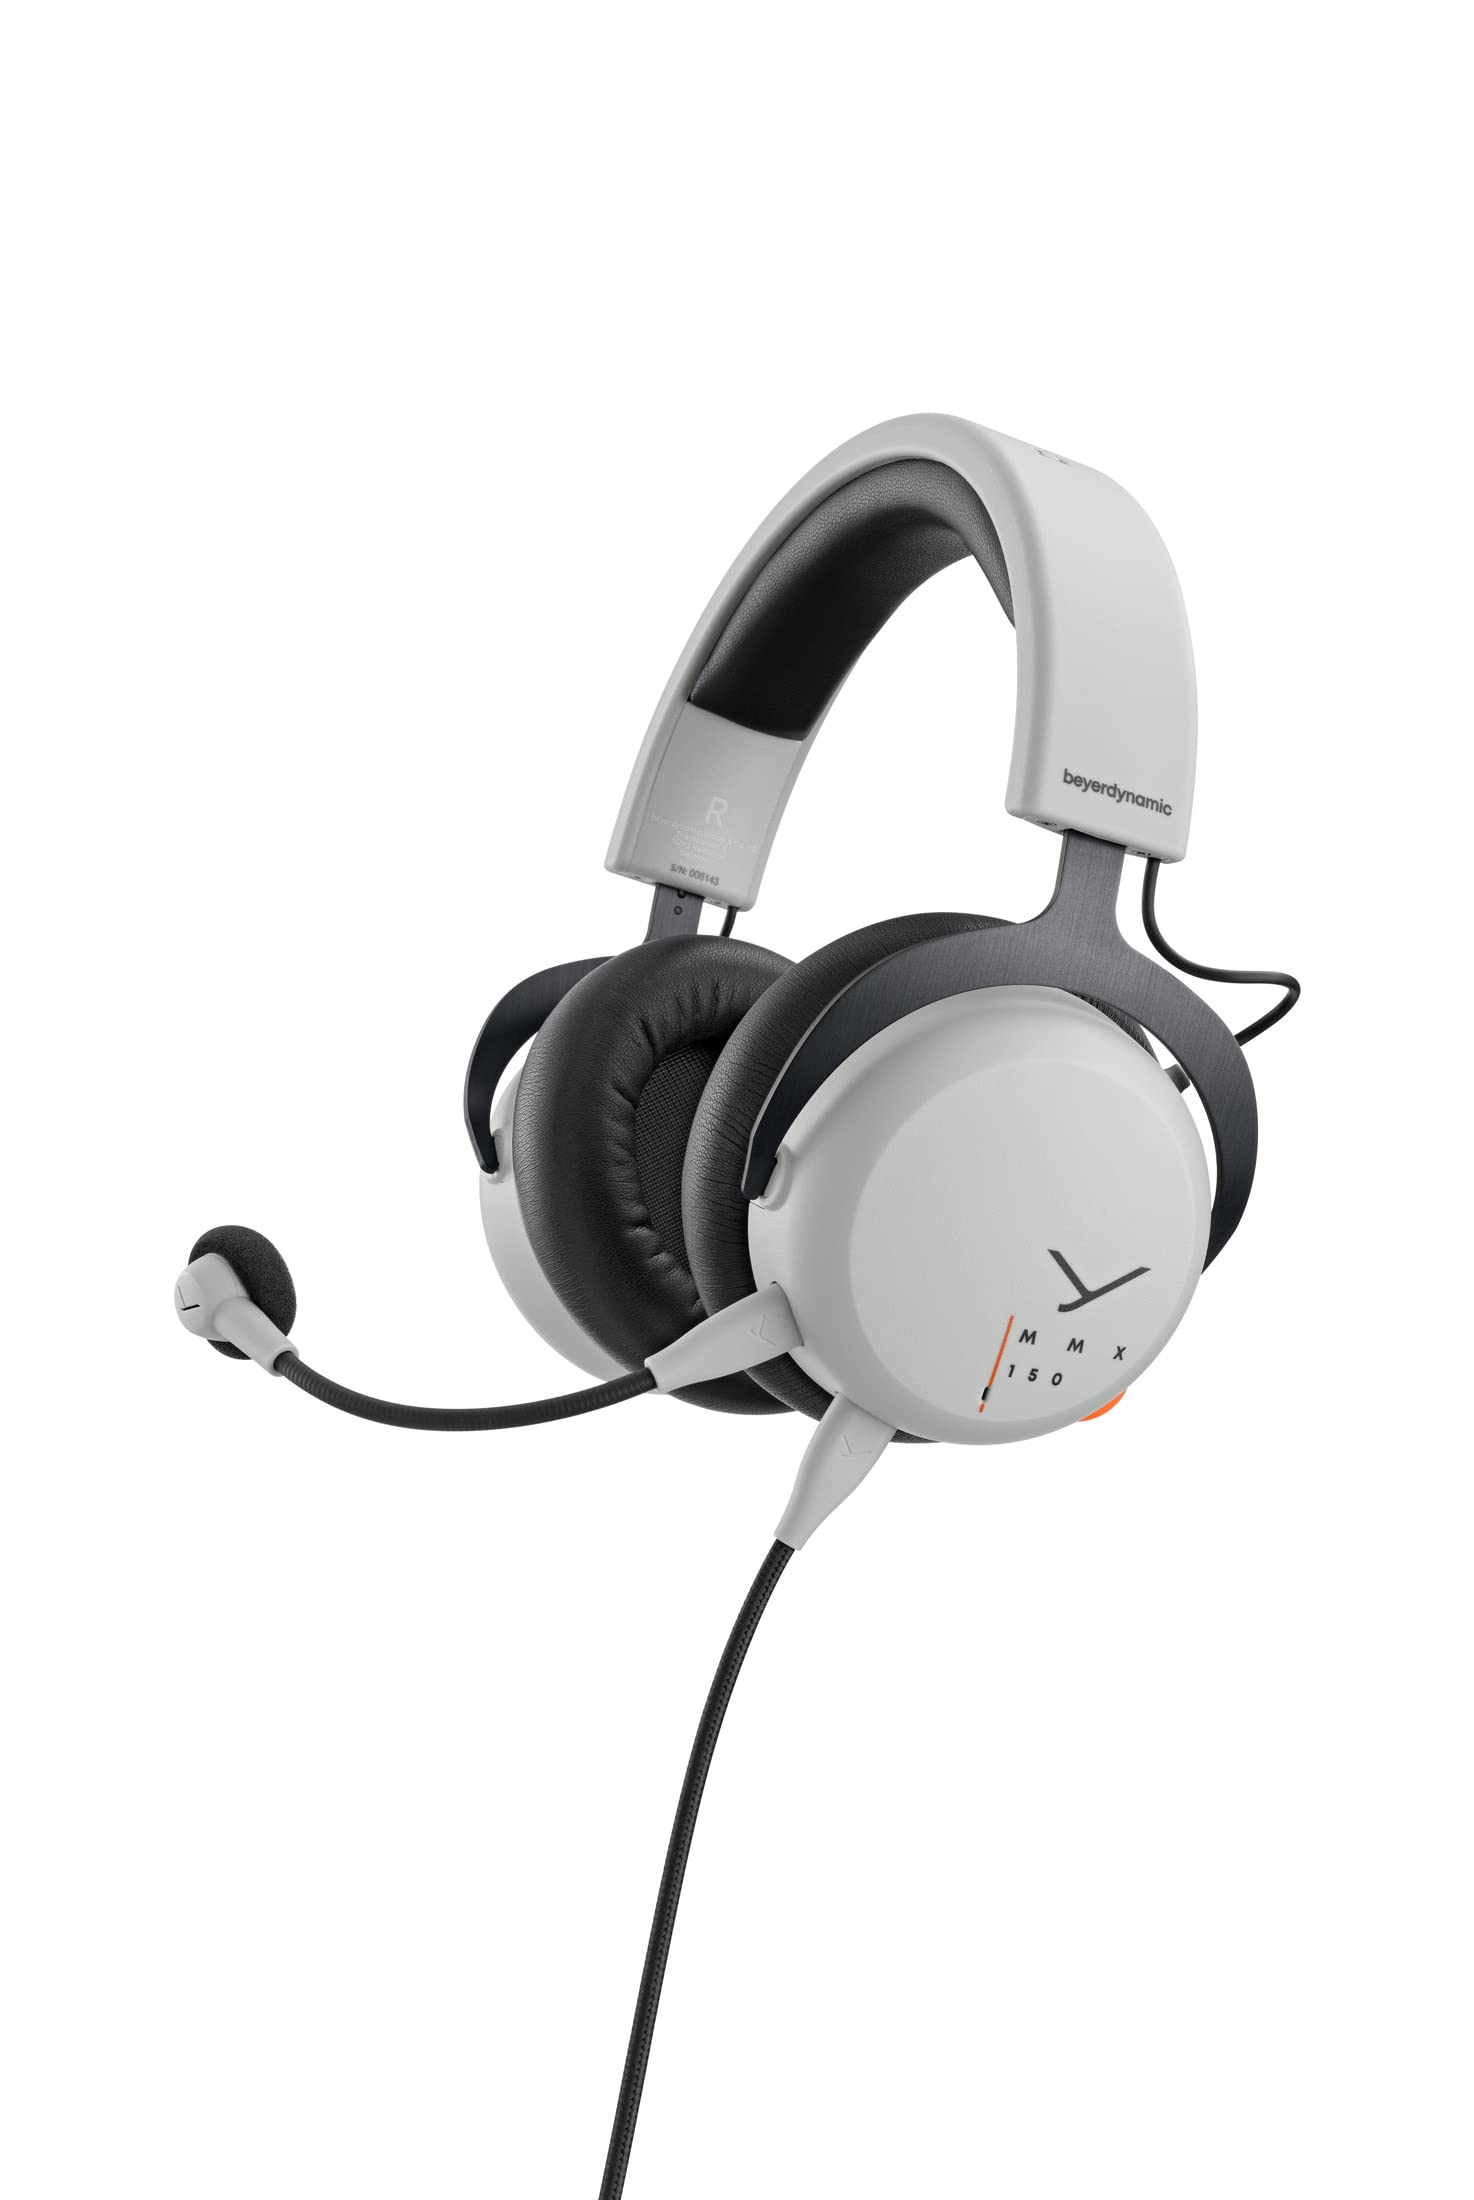 beyerdynamic MMX 150 geschlossenes Over-Ear Gaming-Headset in Grau mit Augmented Mode, META Voice Mikrofon, exzellenter Sound für alle Gaming Devices